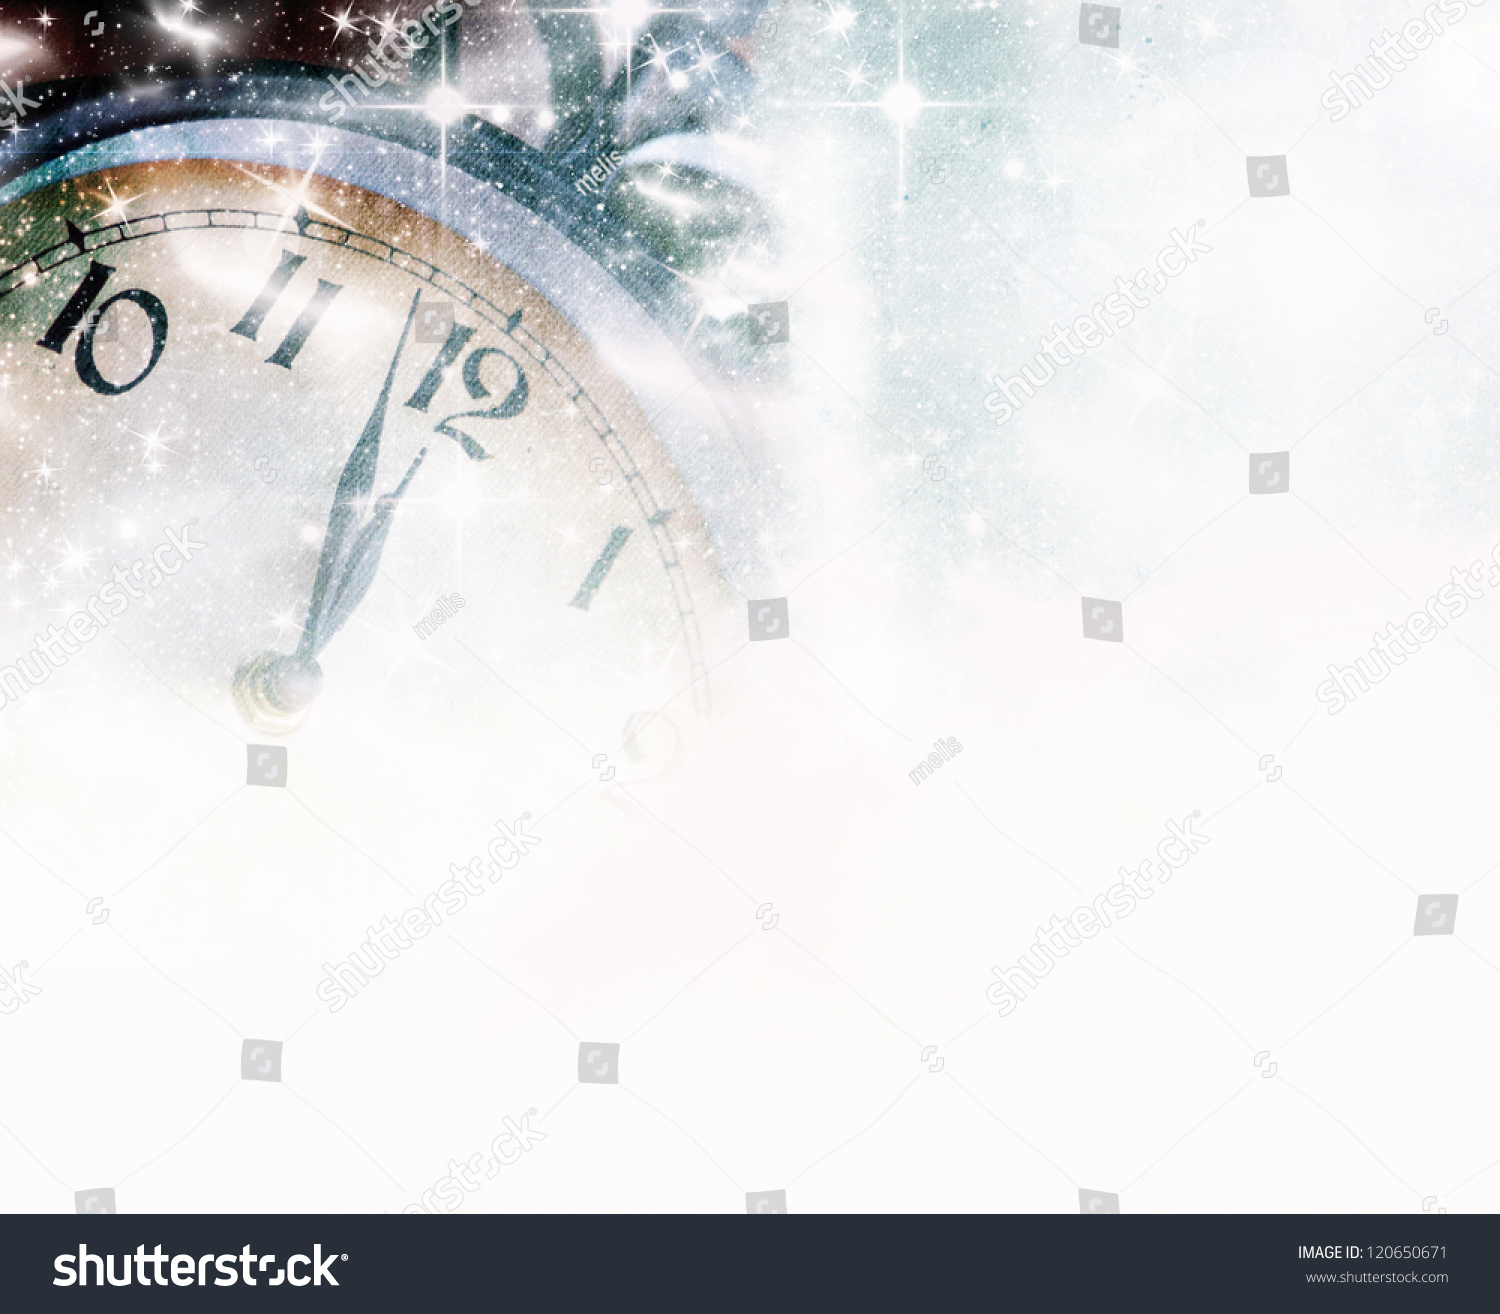 New Years Midnight Stock Photo Shutterstock